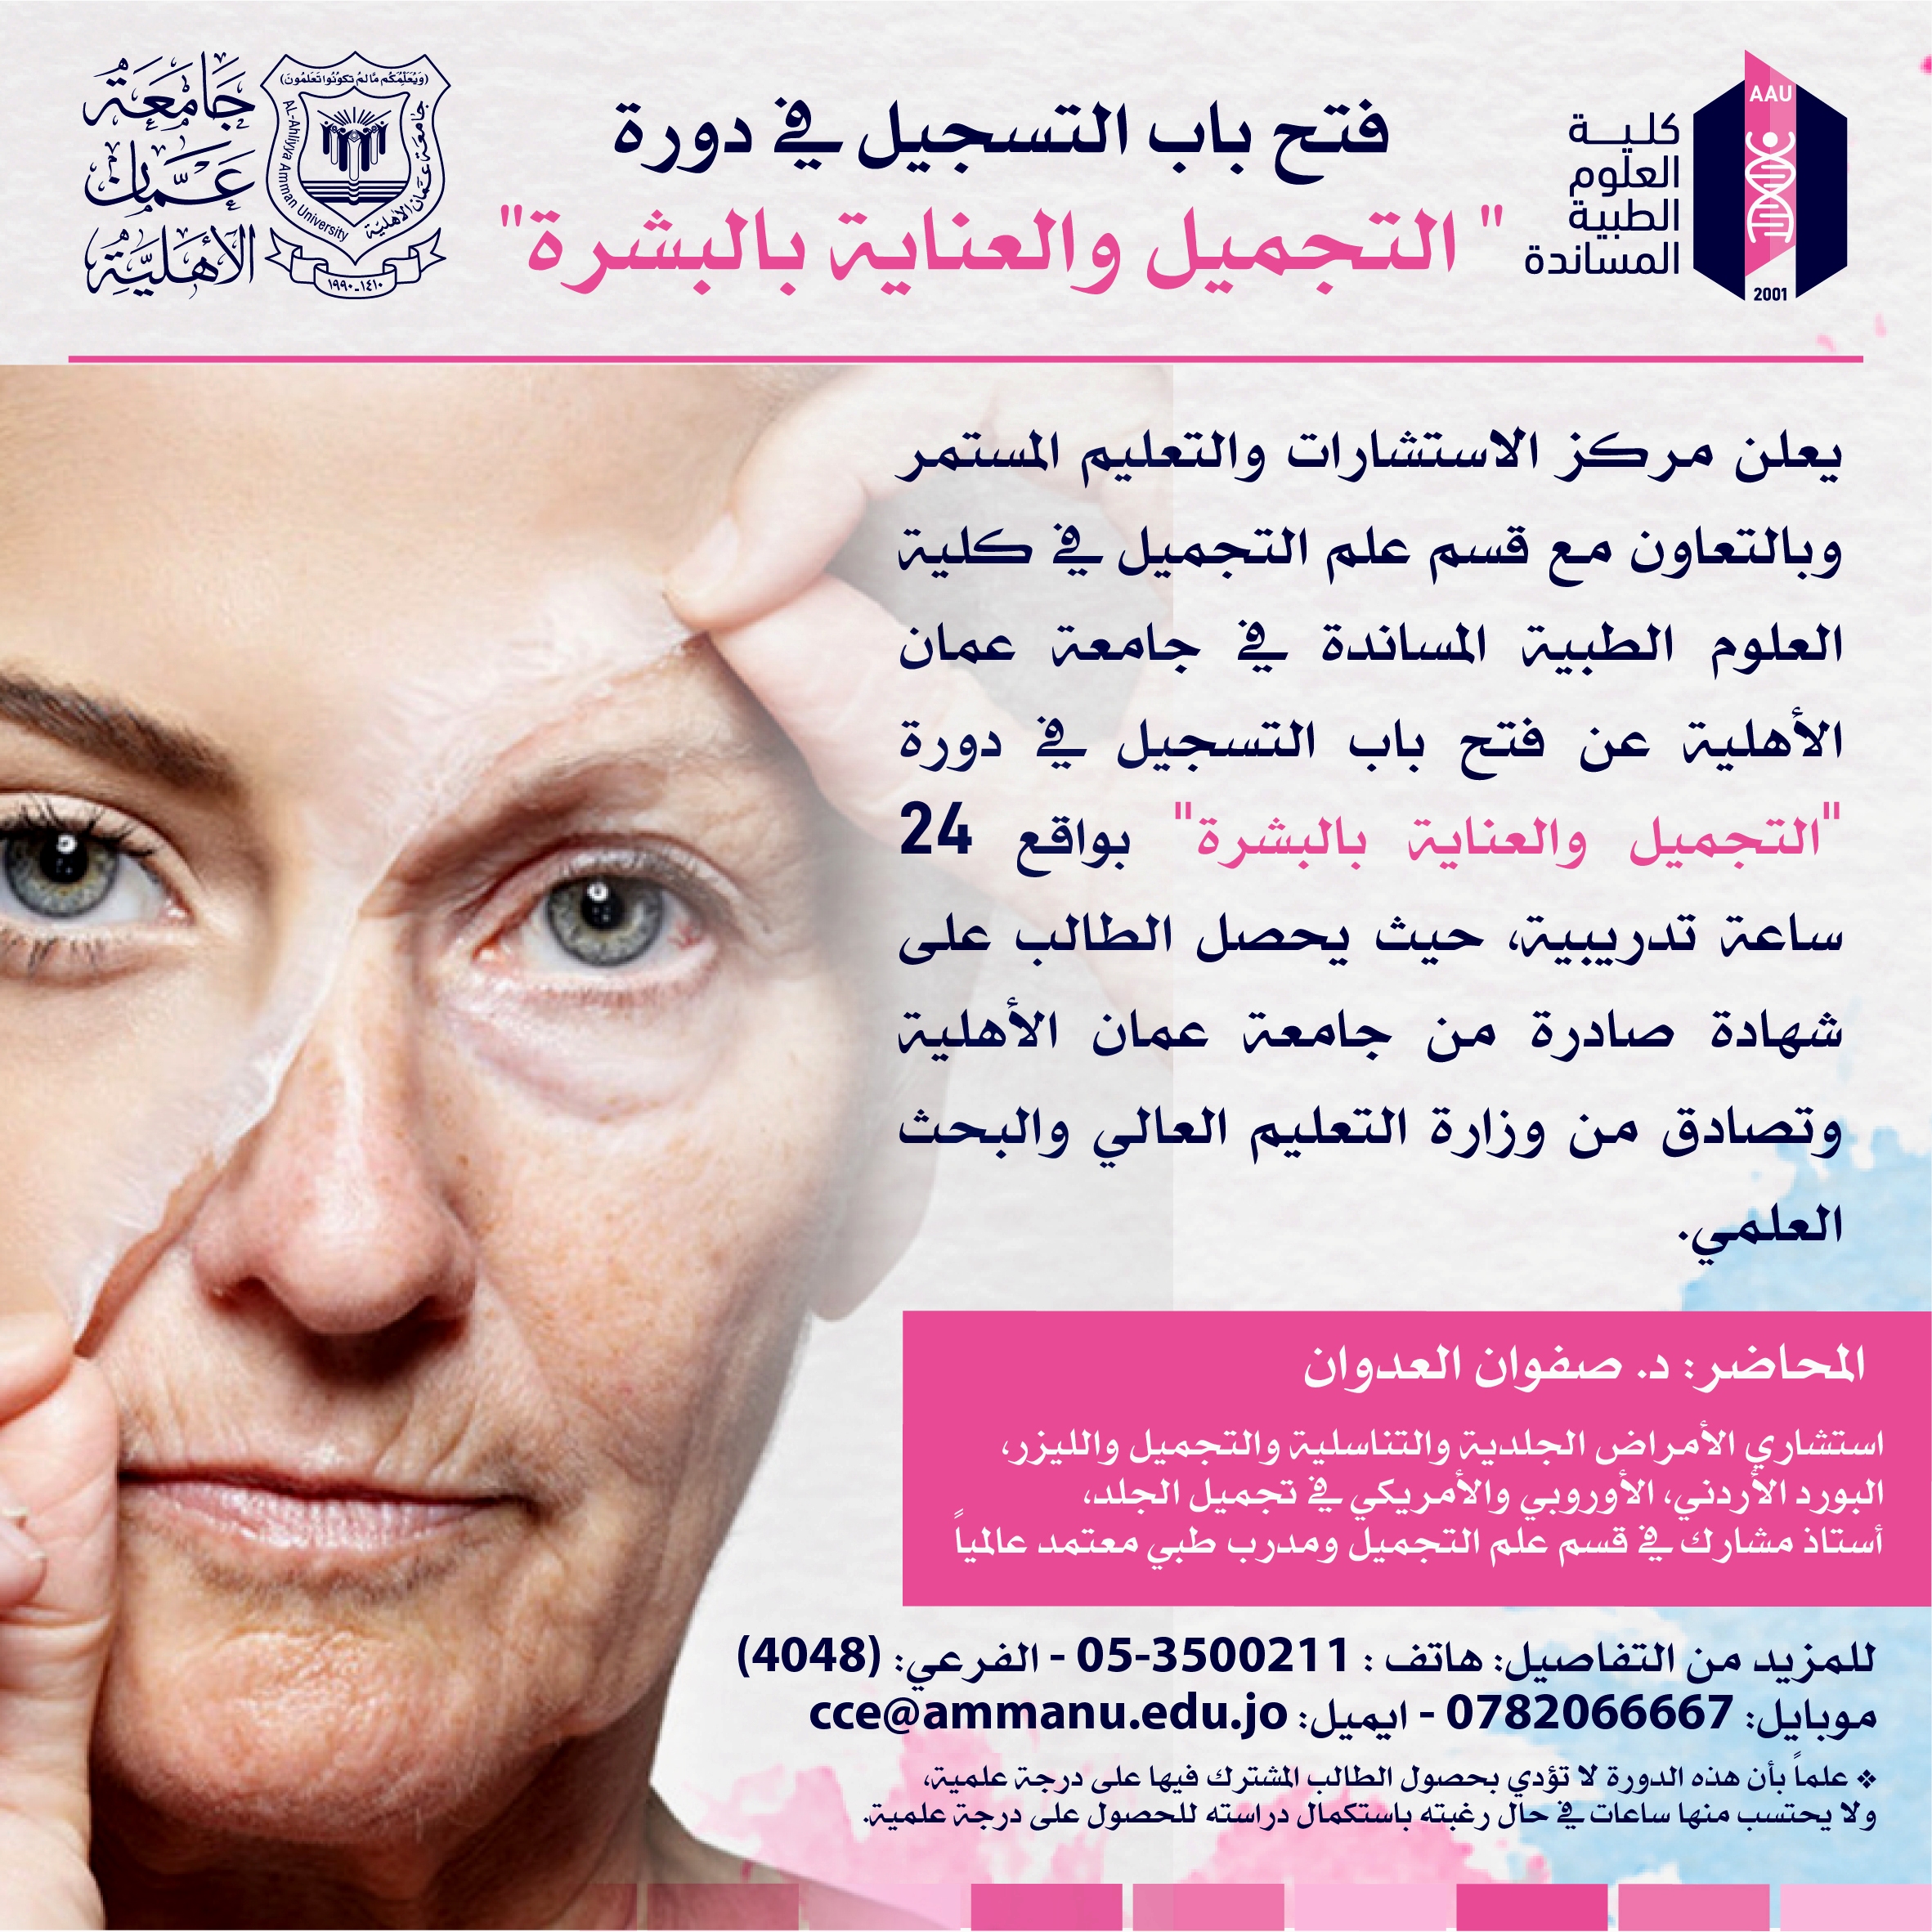 مركز الاستشارات في عمان الاهلية يعلن عن فتح باب التسجيل في دورة التجميل والعناية بالبشرة